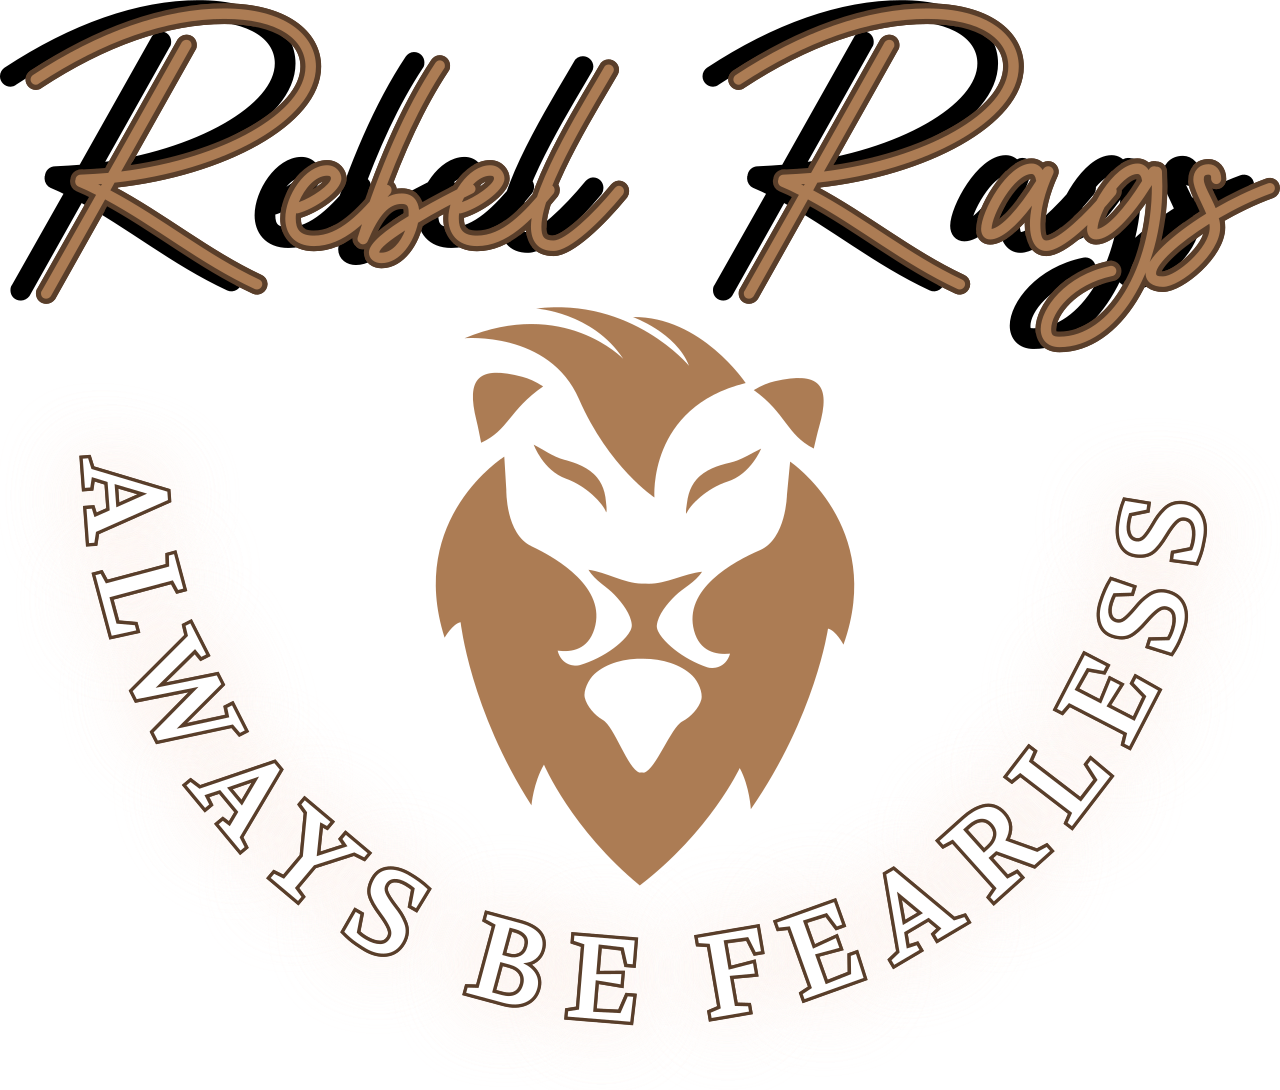 Rebel Rags's logo